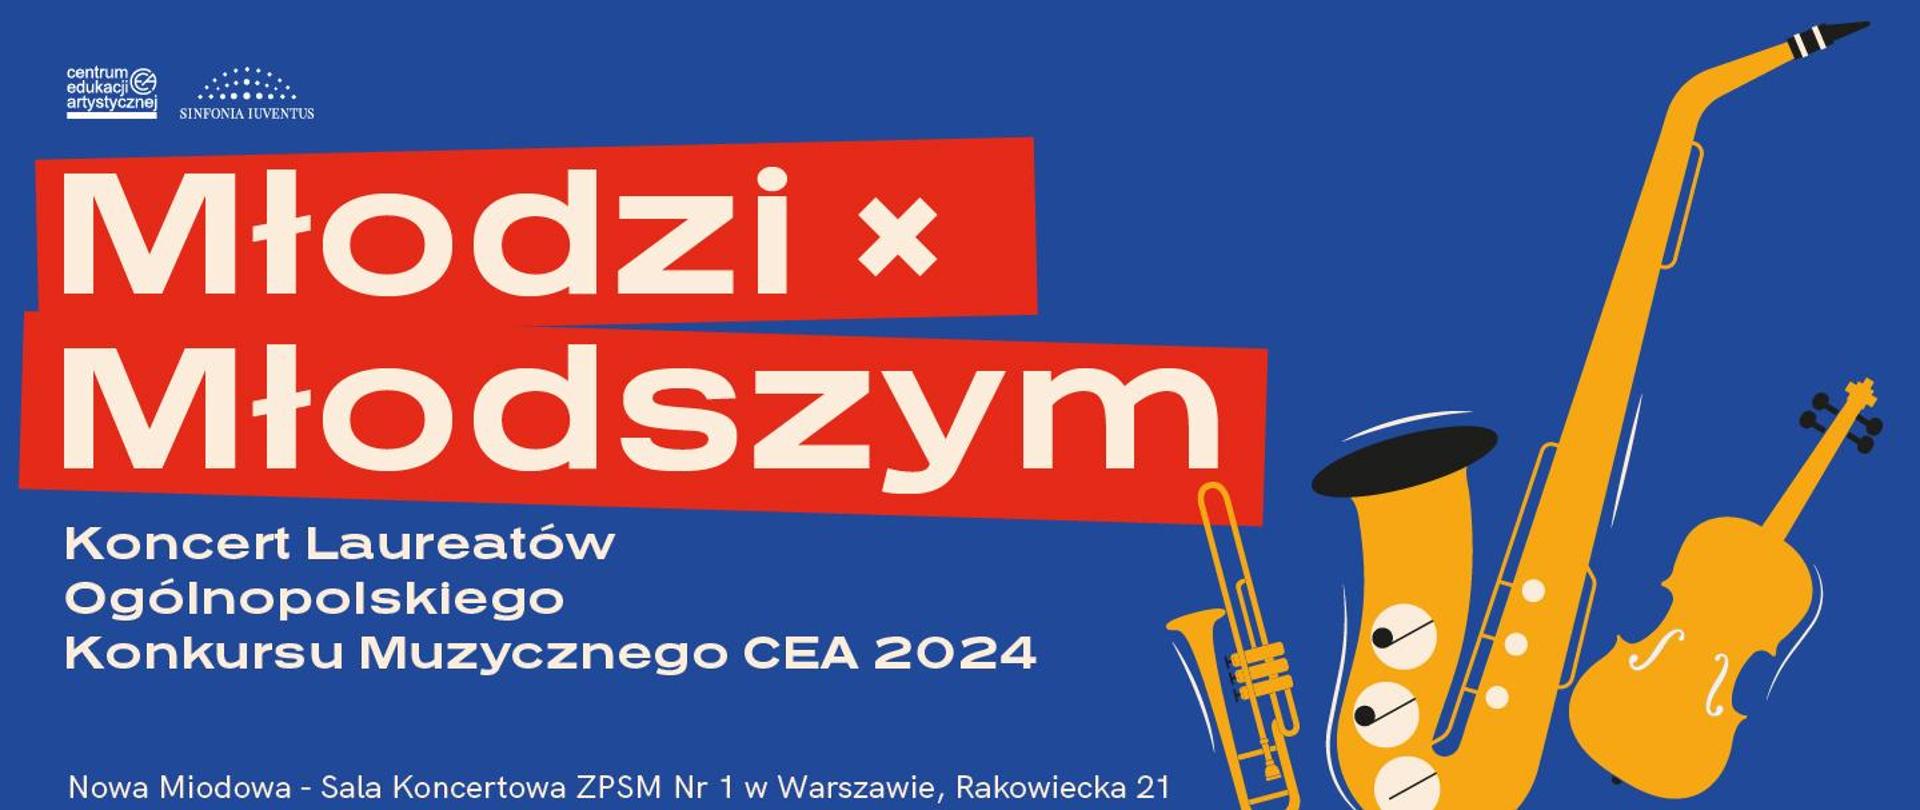 Afisz koncertu na niebieskim tle informujący, że w dniu 17 maja 2024 r. odbędzie się uroczysty koncert laureatów Ogólnopolskiego Konkursu Muzycznego CEA kwiecień 2024.